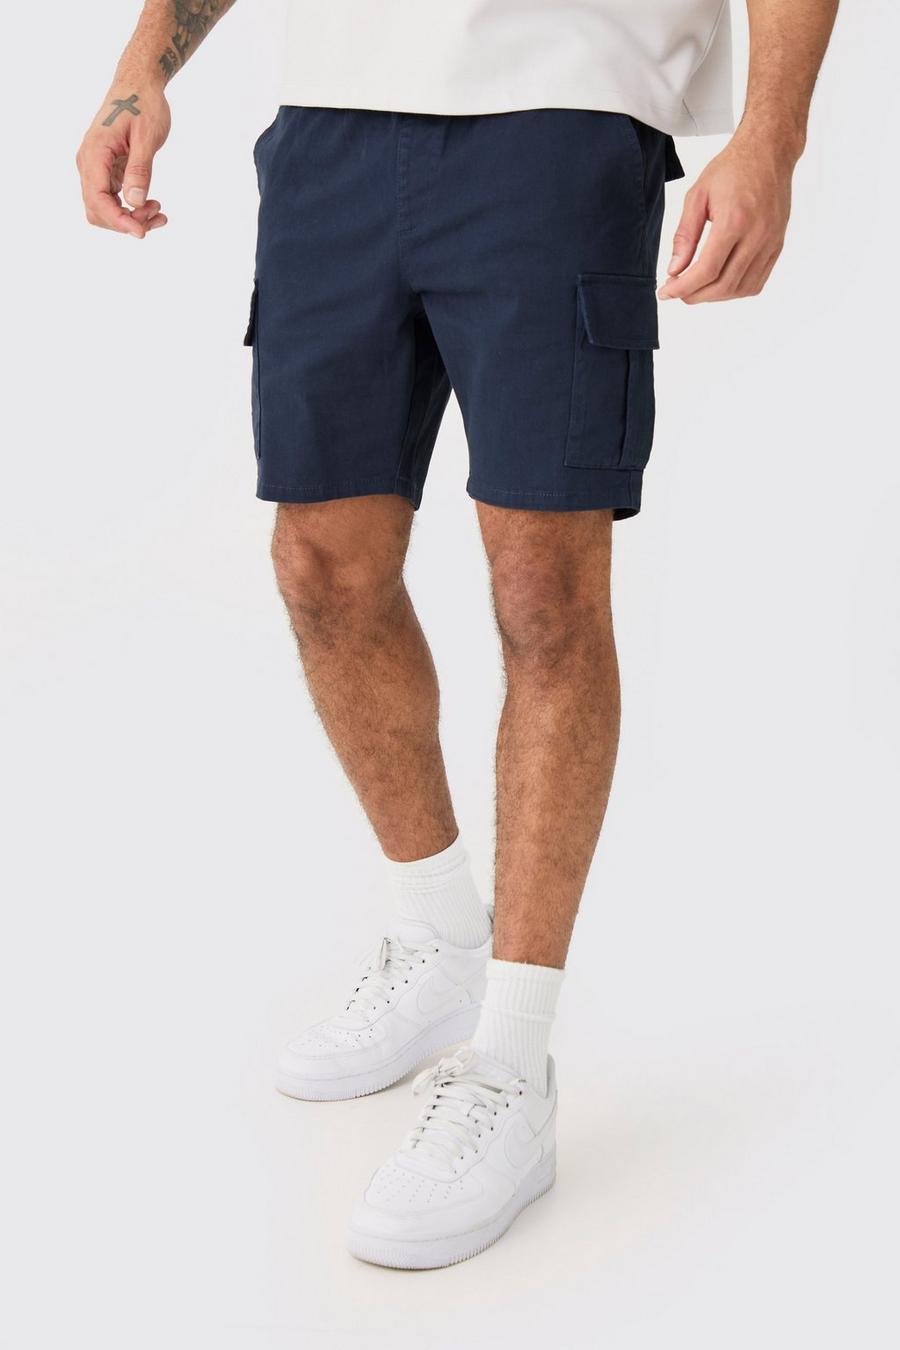 Pantaloncini Cargo Skinny Fit blu navy con vita elasticizzata